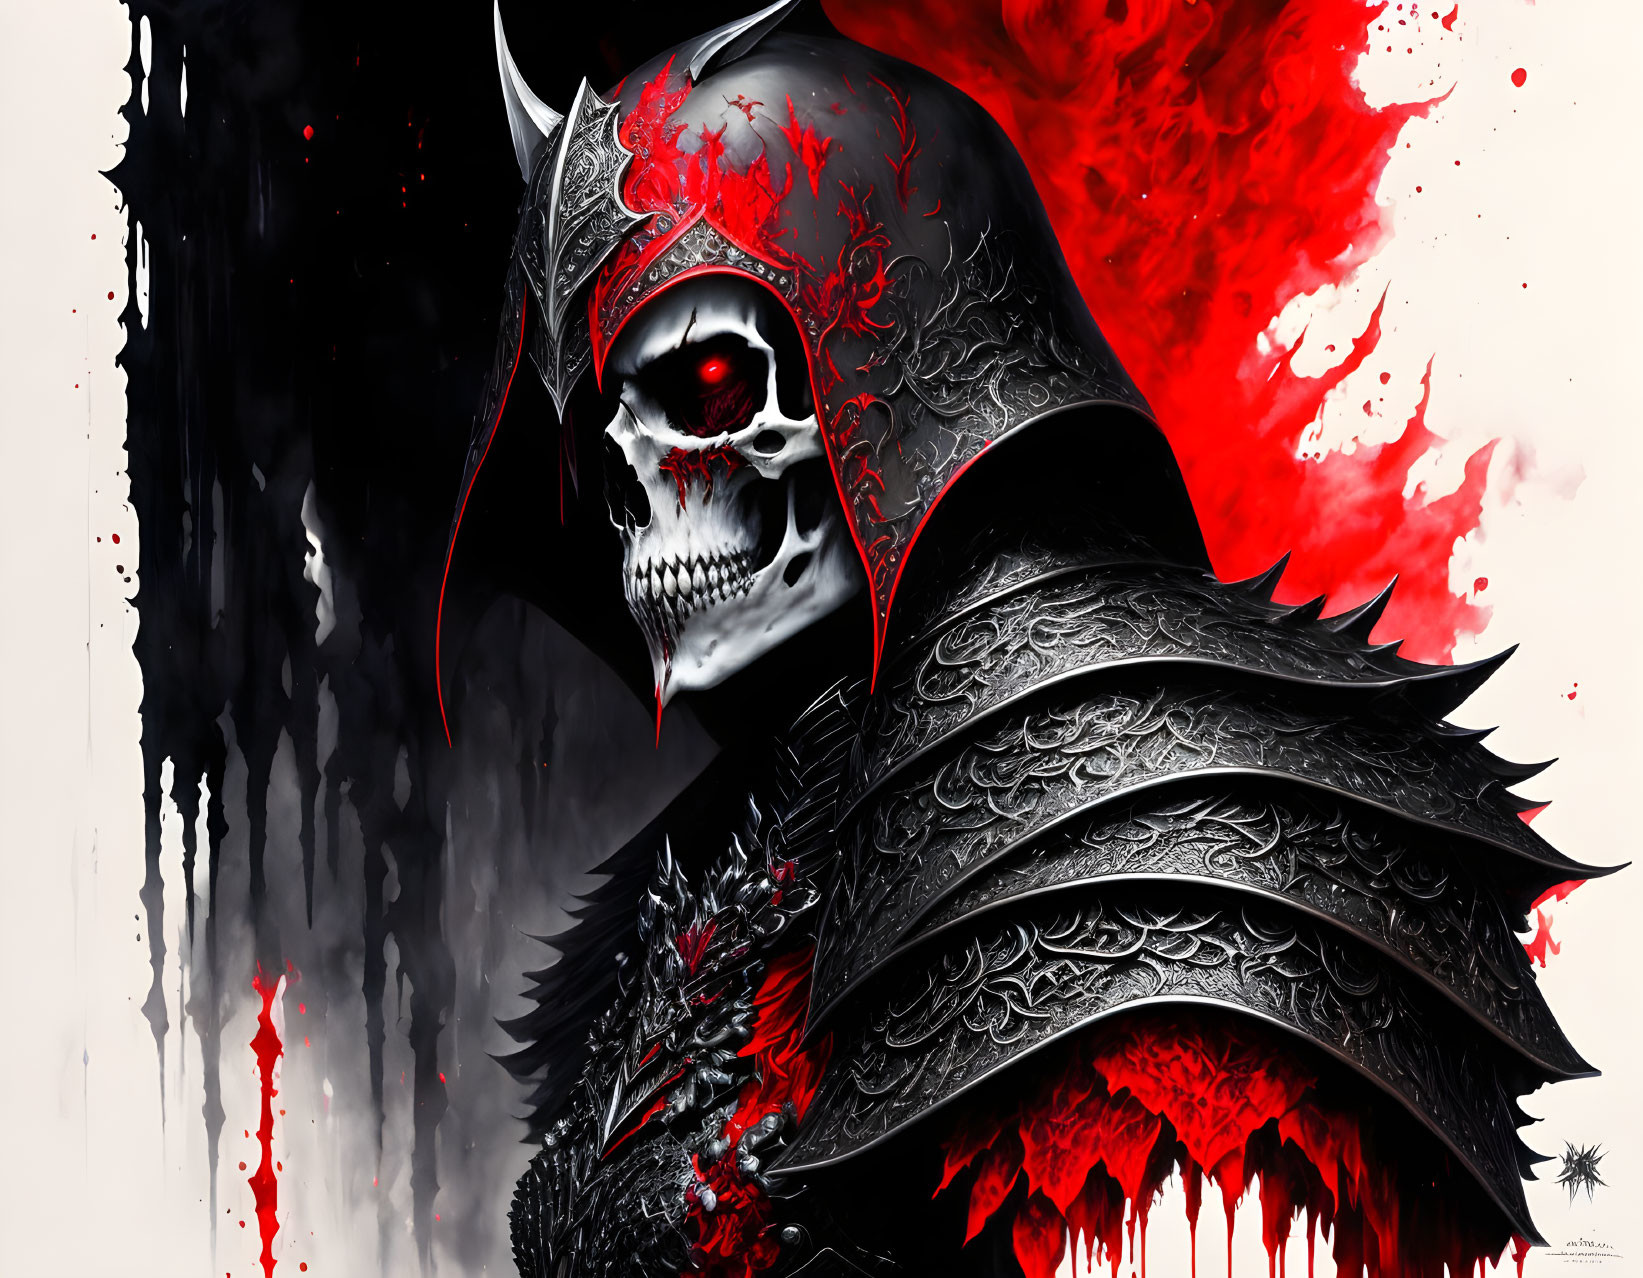 Digital artwork: Skeletal warrior in black and red armor on blood-red backdrop